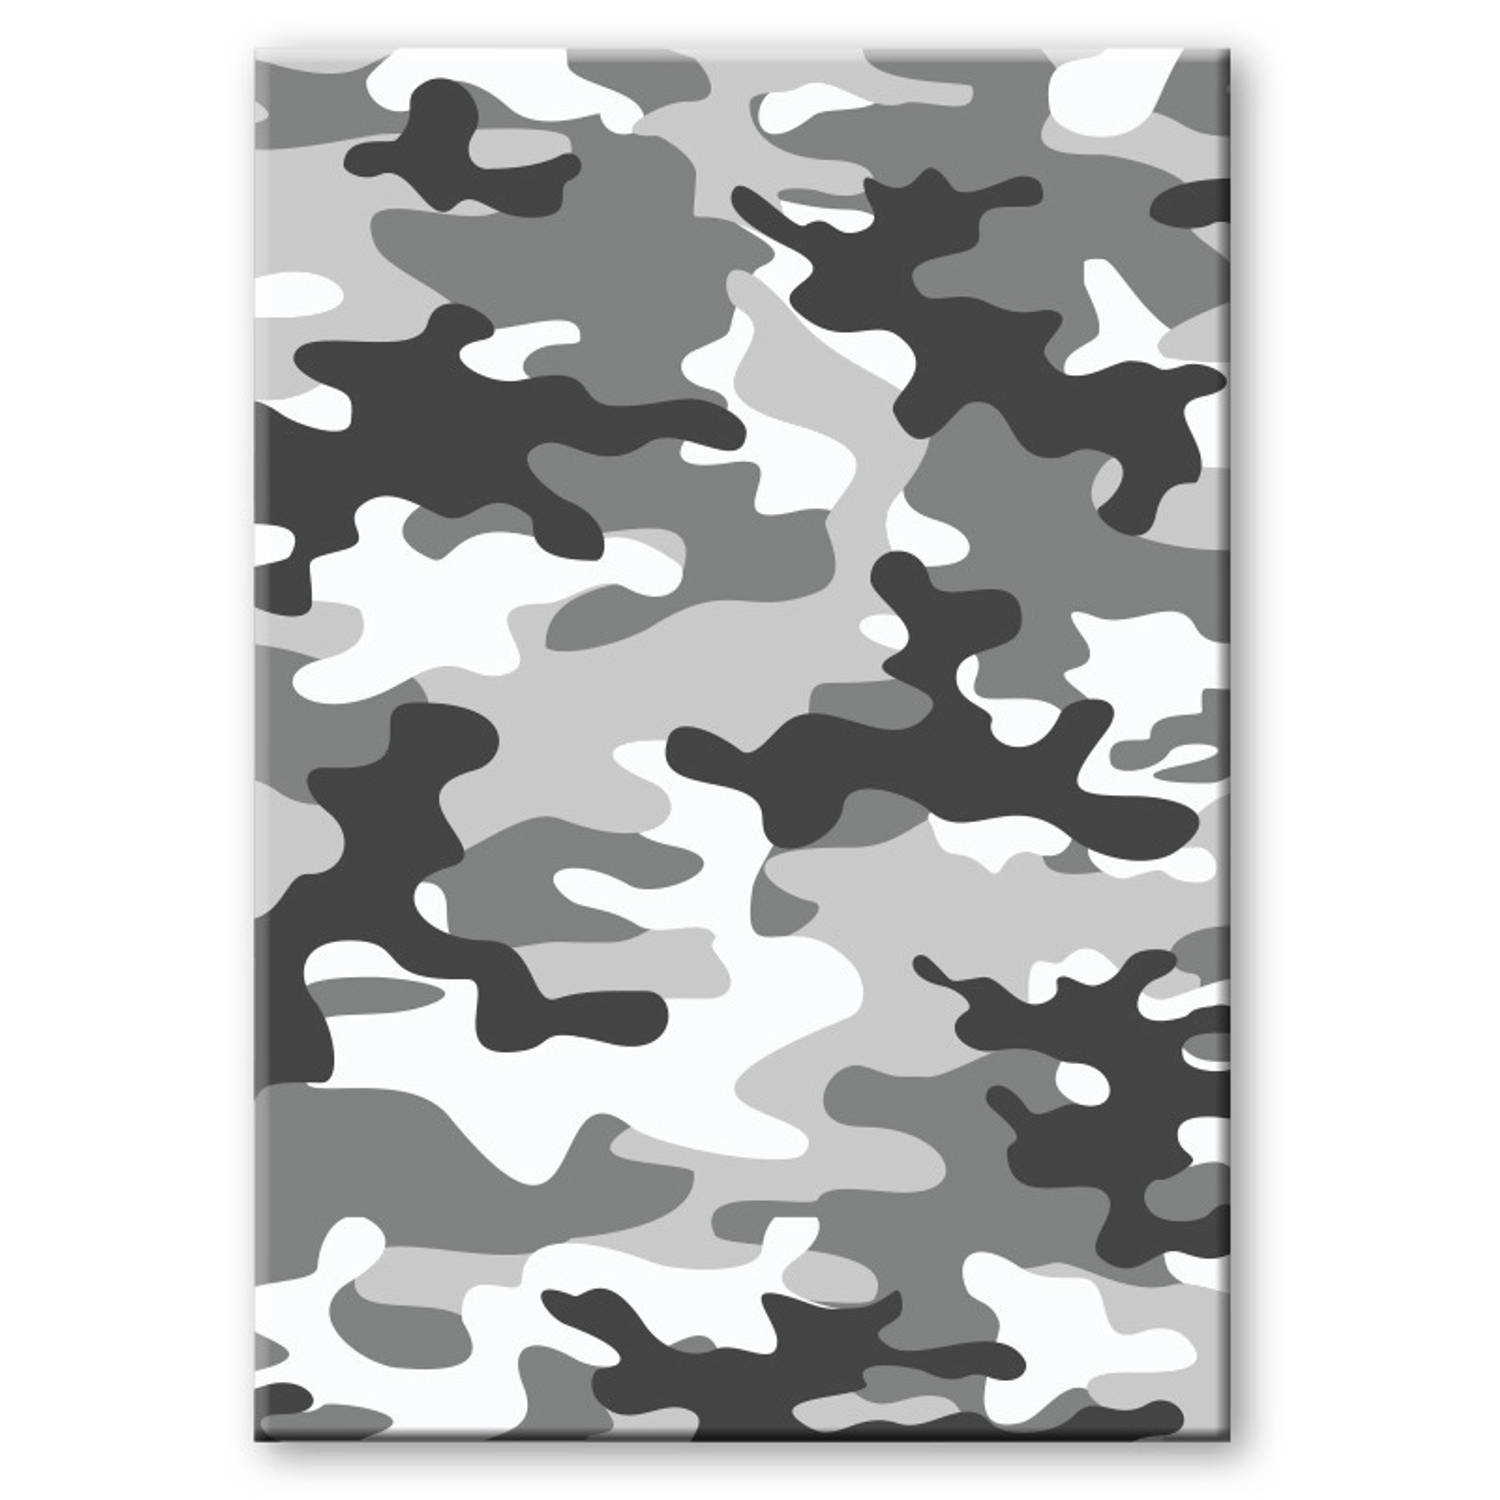 Camouflage-legerprint Luxe Schrift Gelinieerd Grijs A5 Formaat Notitieboek Kantoor Schrift